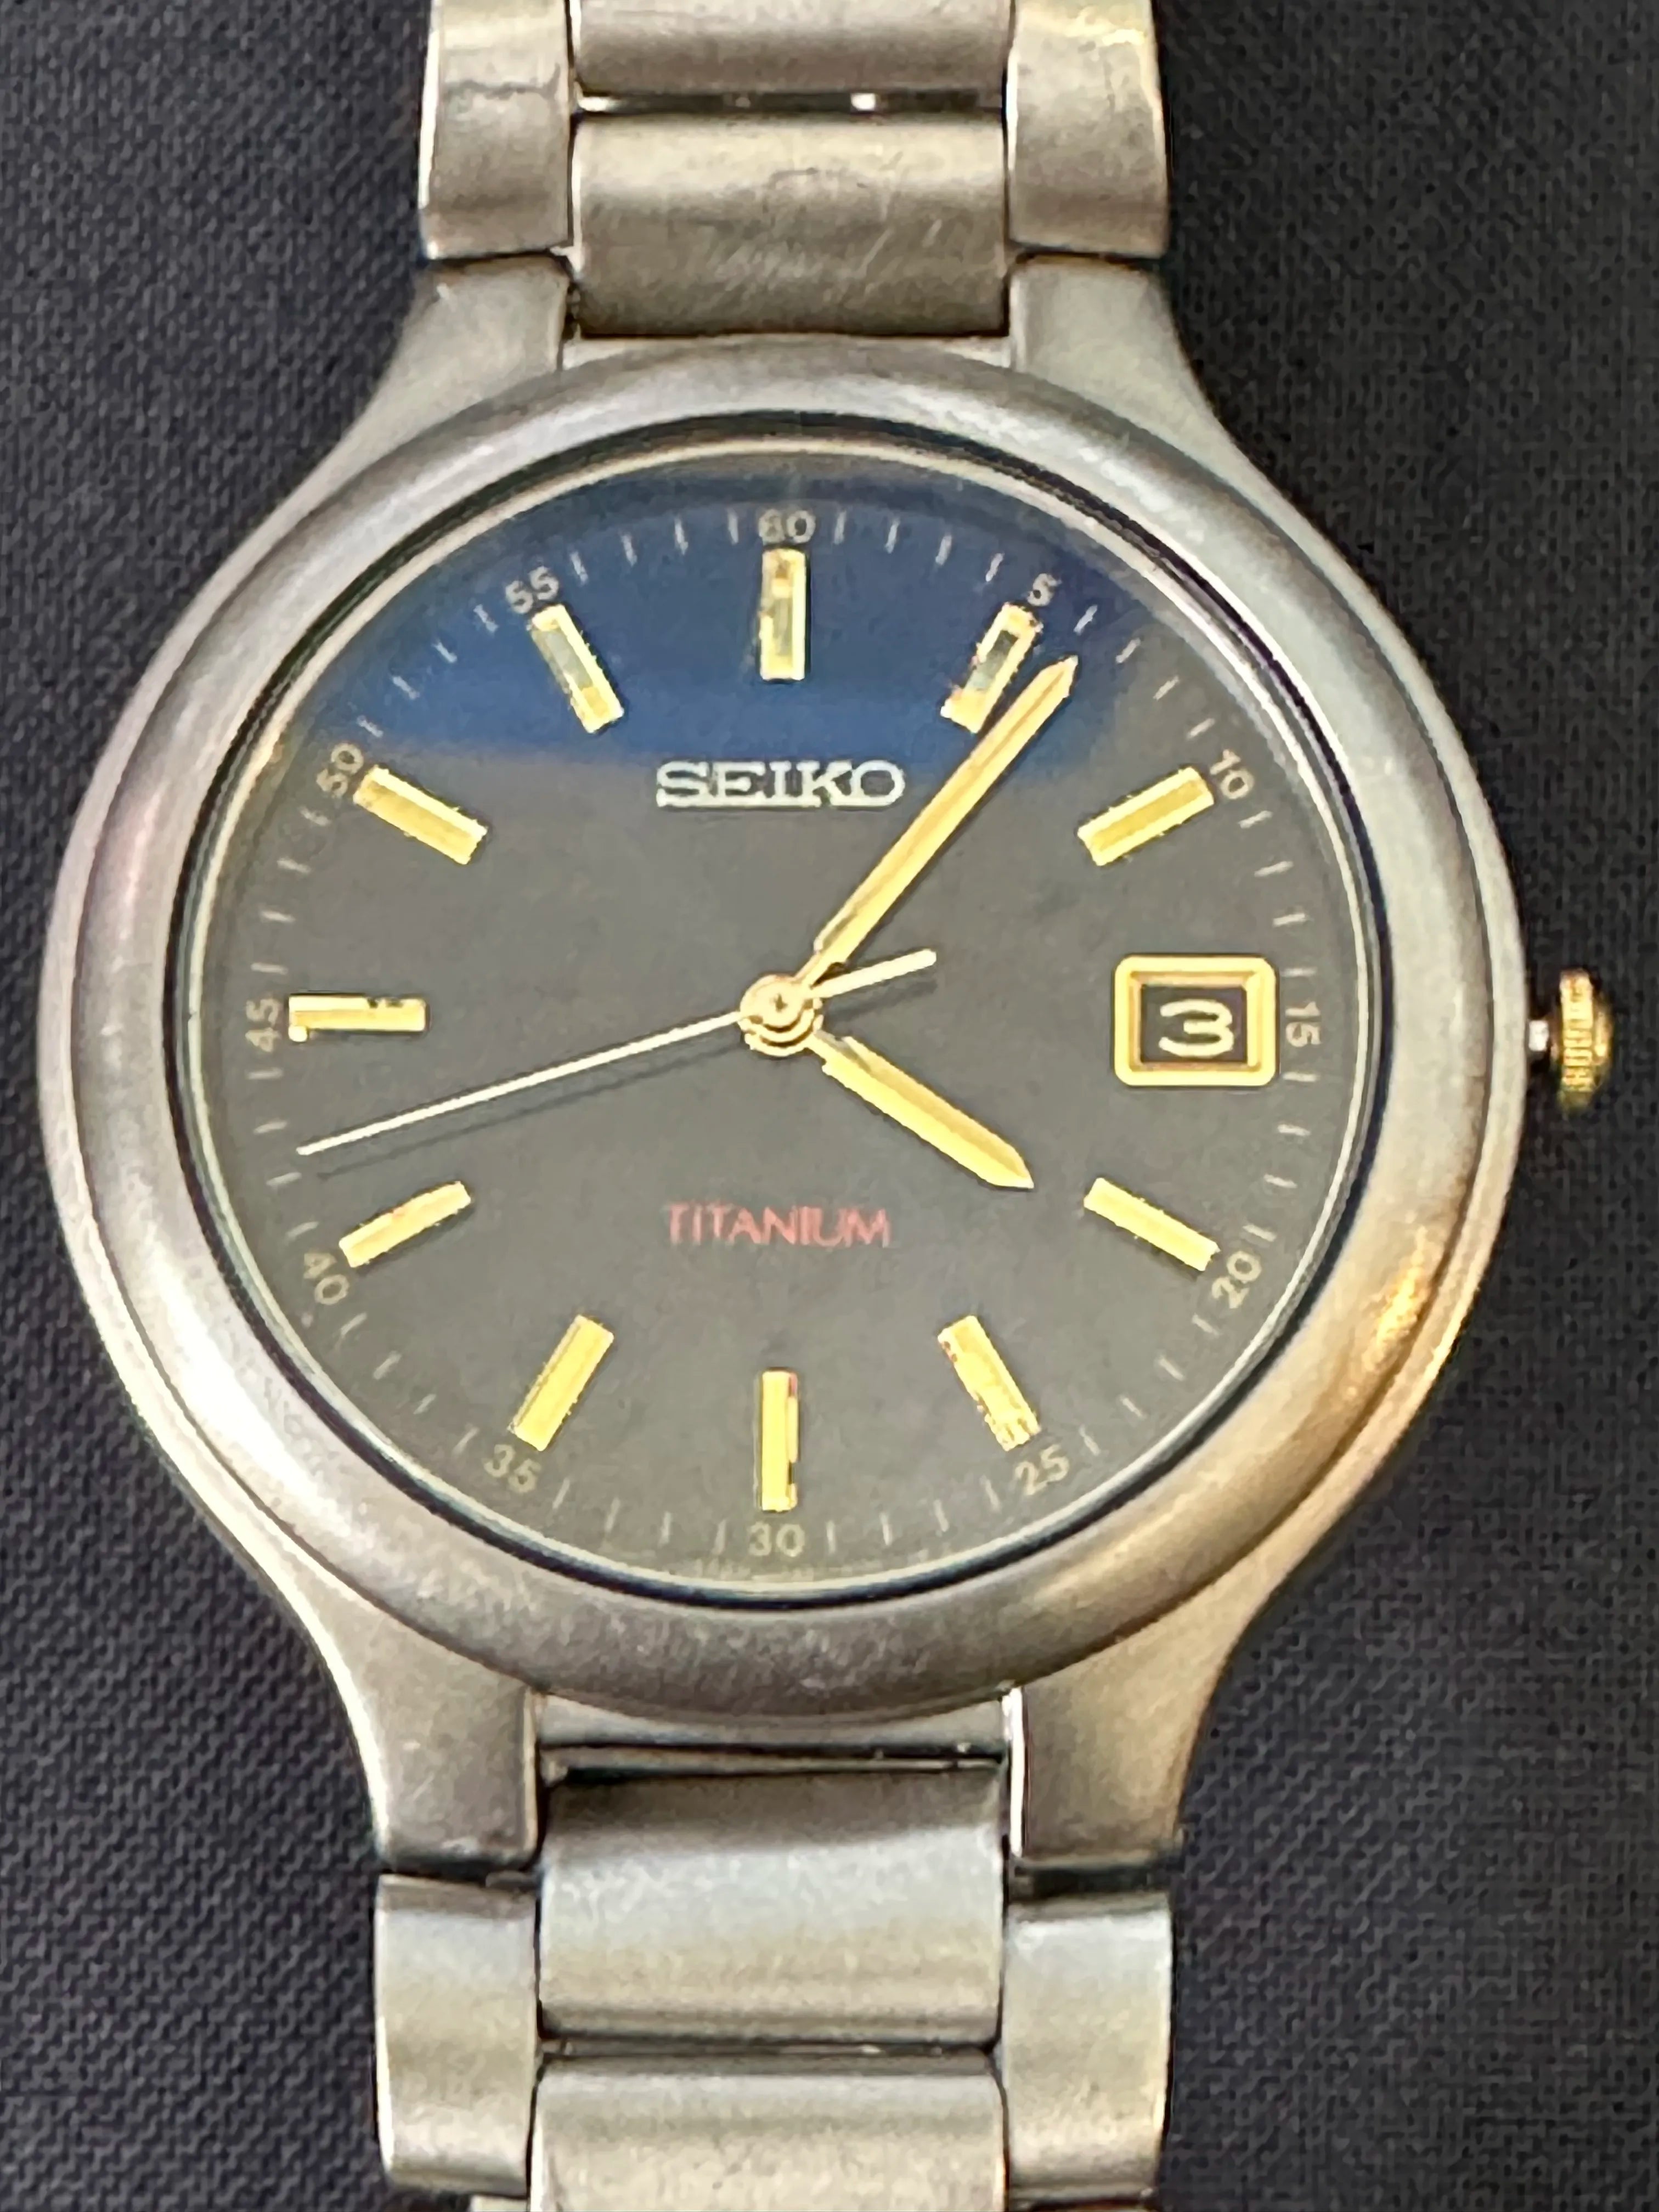 Seiko Titanium Quartz Analog 7N42-8171 Men's Watch - 71142-8109-A0 ...